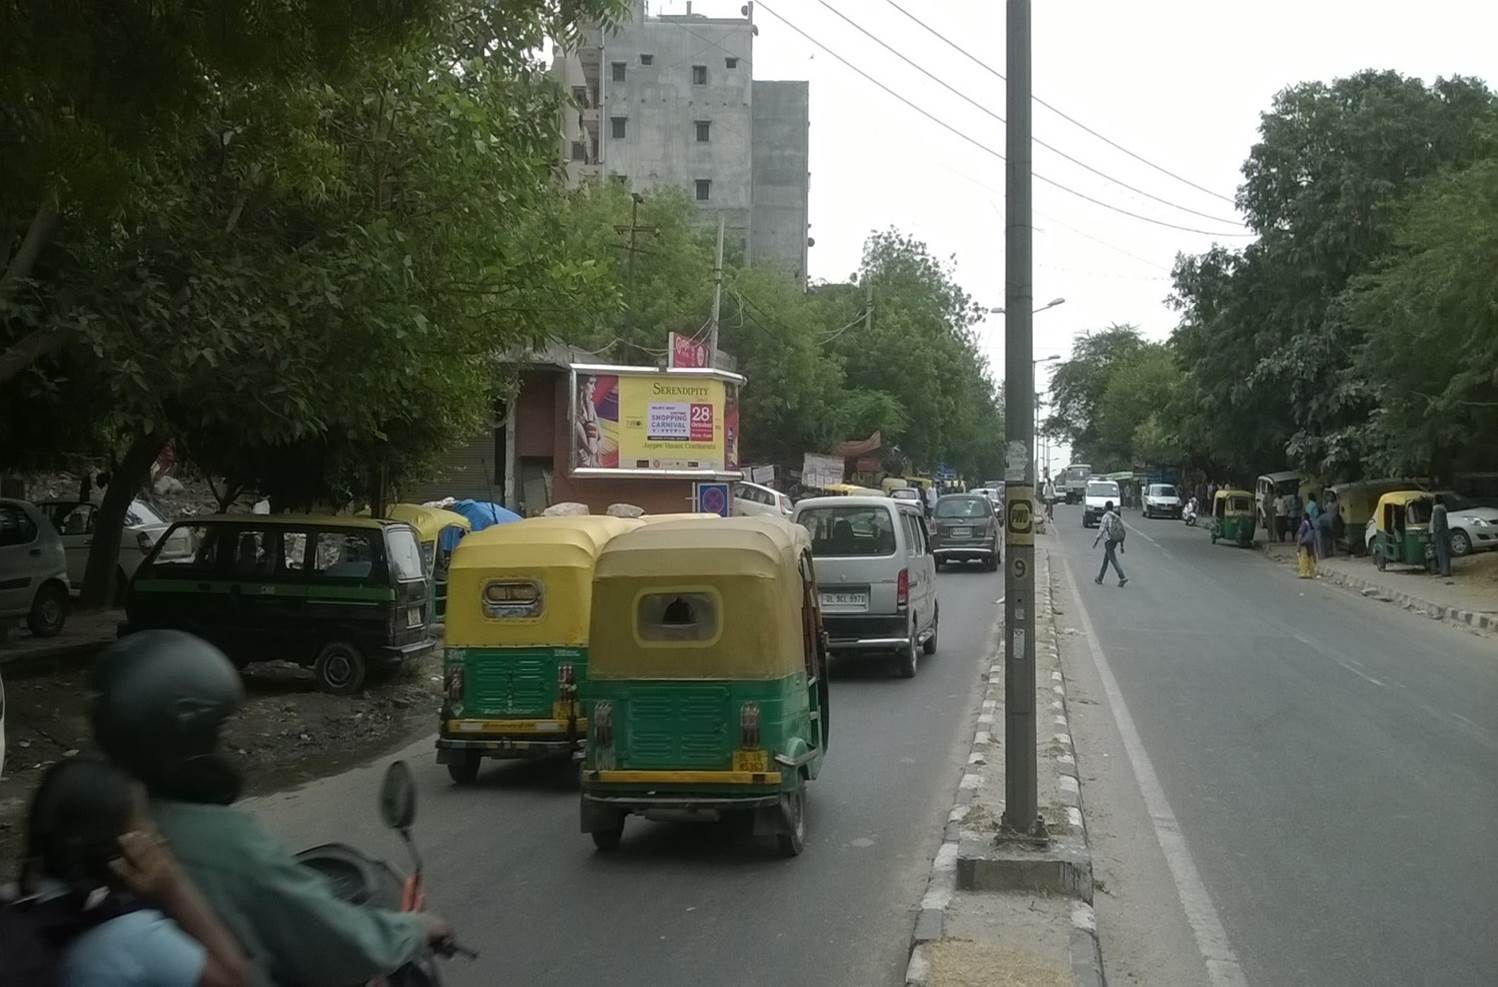 Munirka, New Delhi